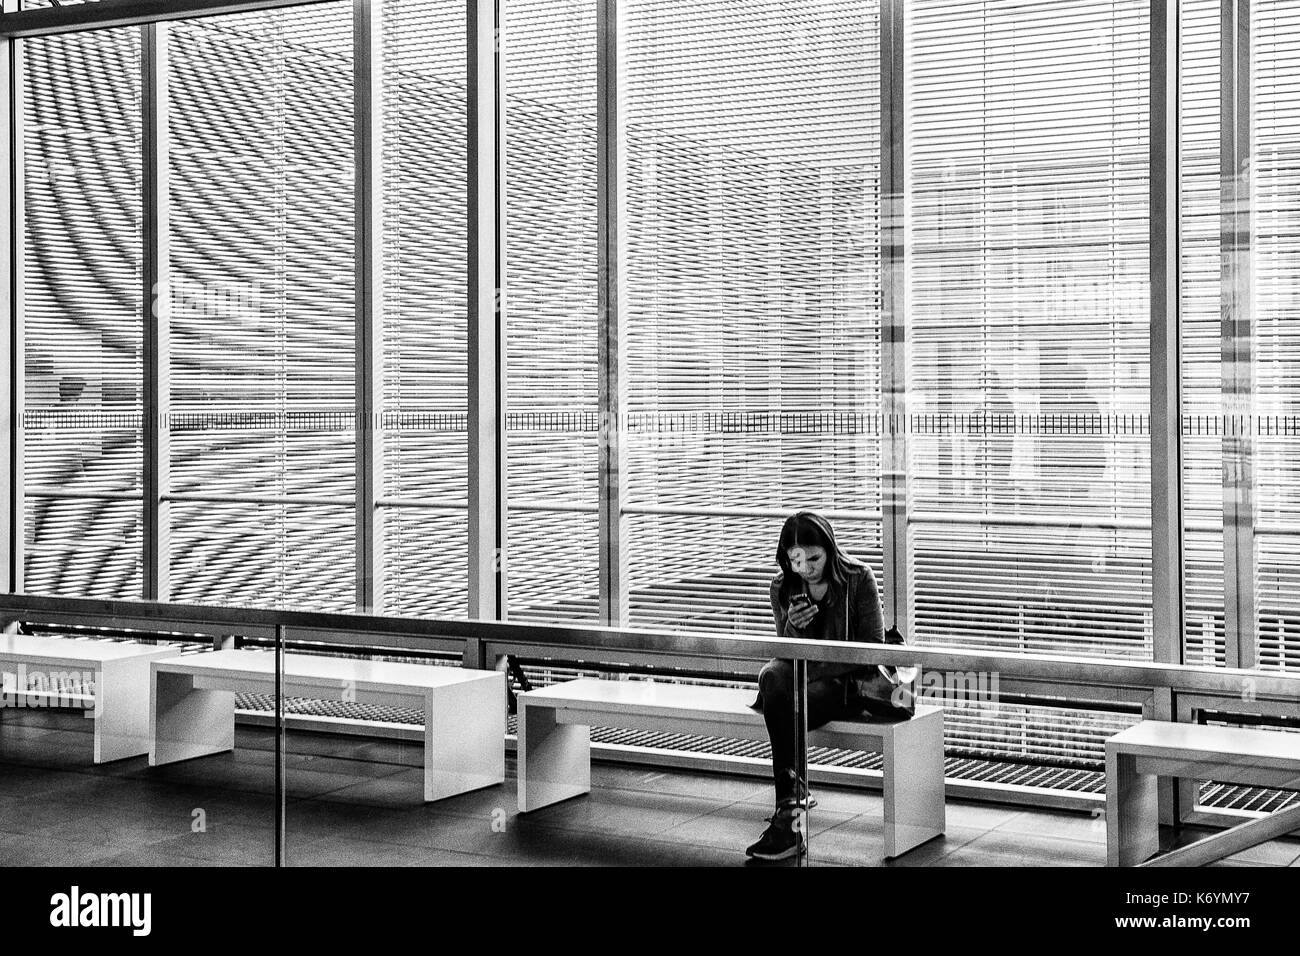 Alemania una muchacha sentada en la entrada del edificio cerrado de la topographie des terrores (topografía del terror), una exposición permanente sobre los nazis que persiguieron a los judíos, Berlín Foto de stock